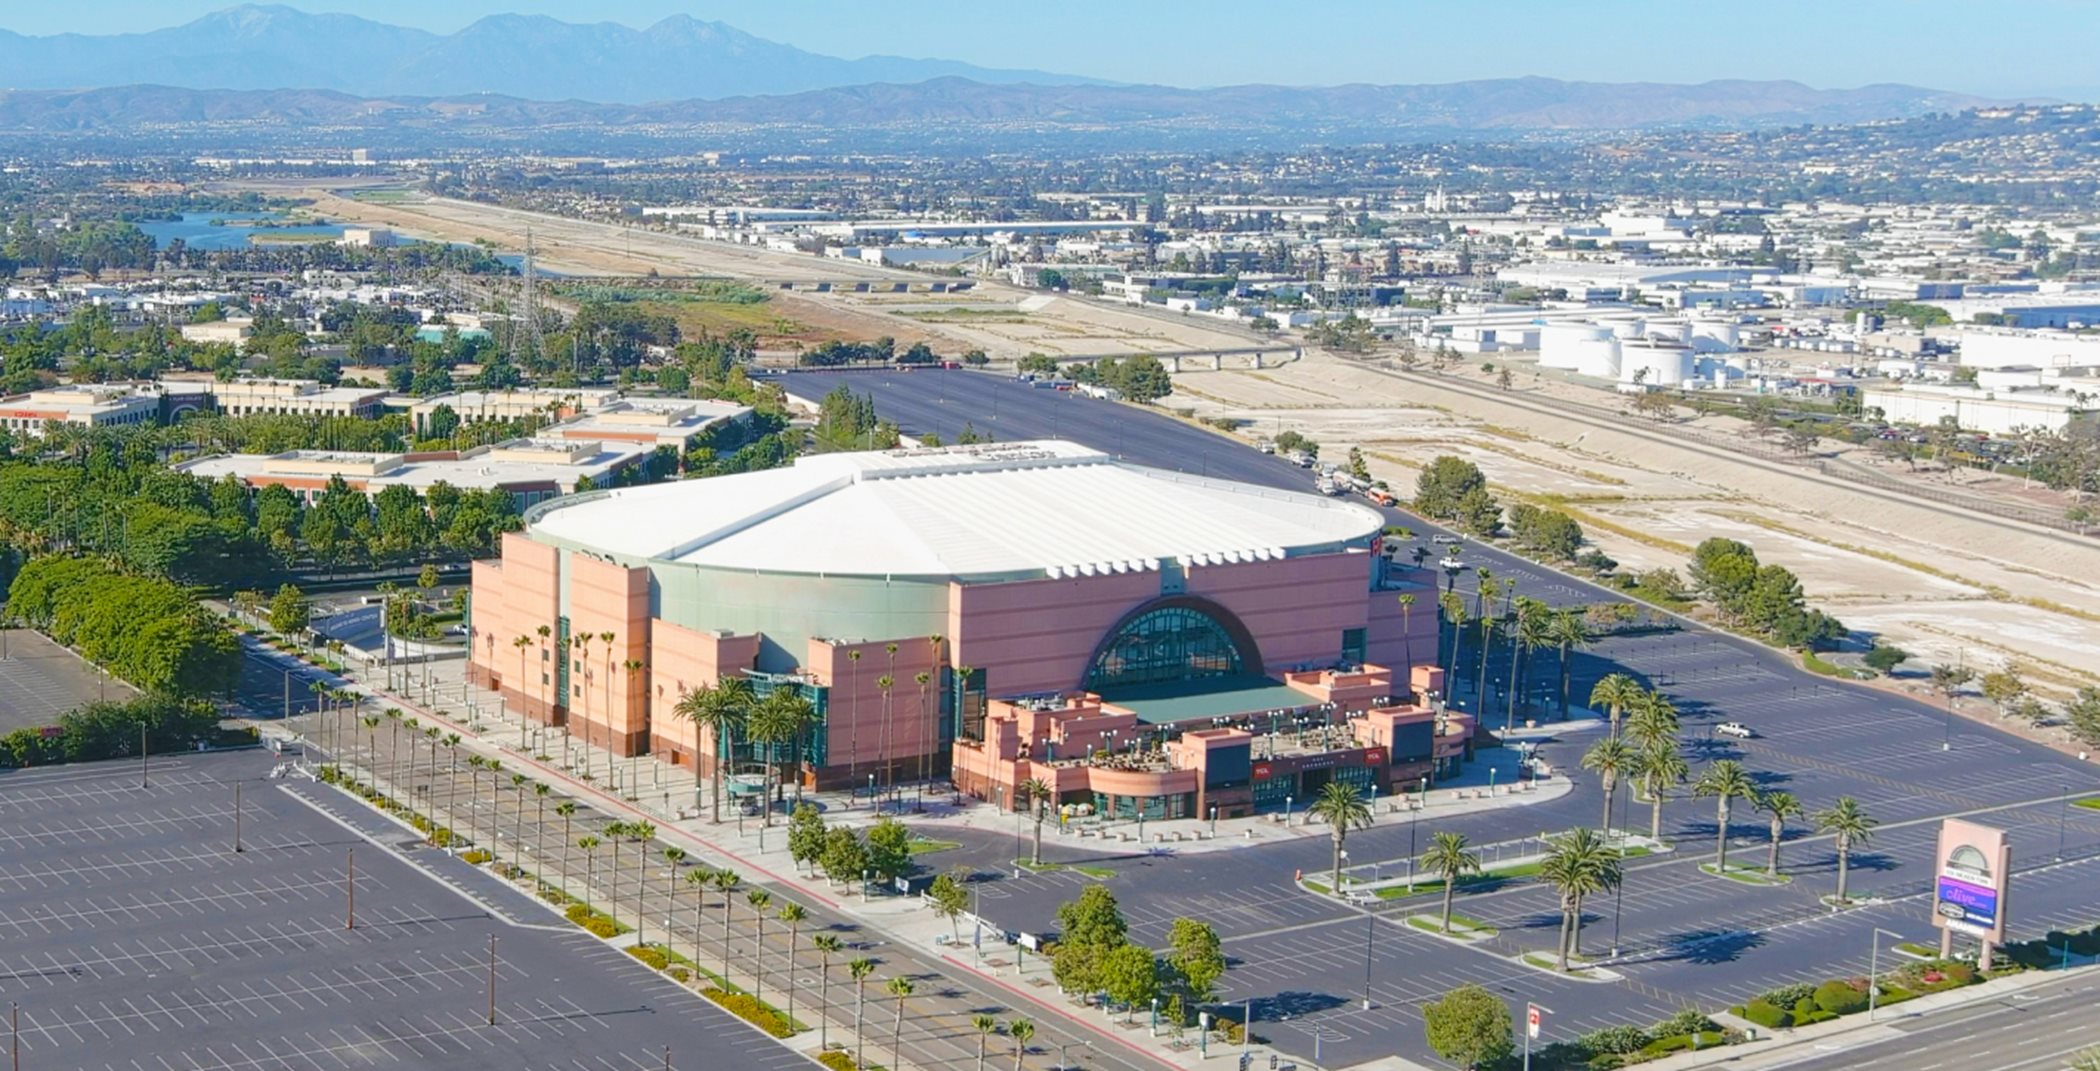 Aerial view of the Honda Center exterior